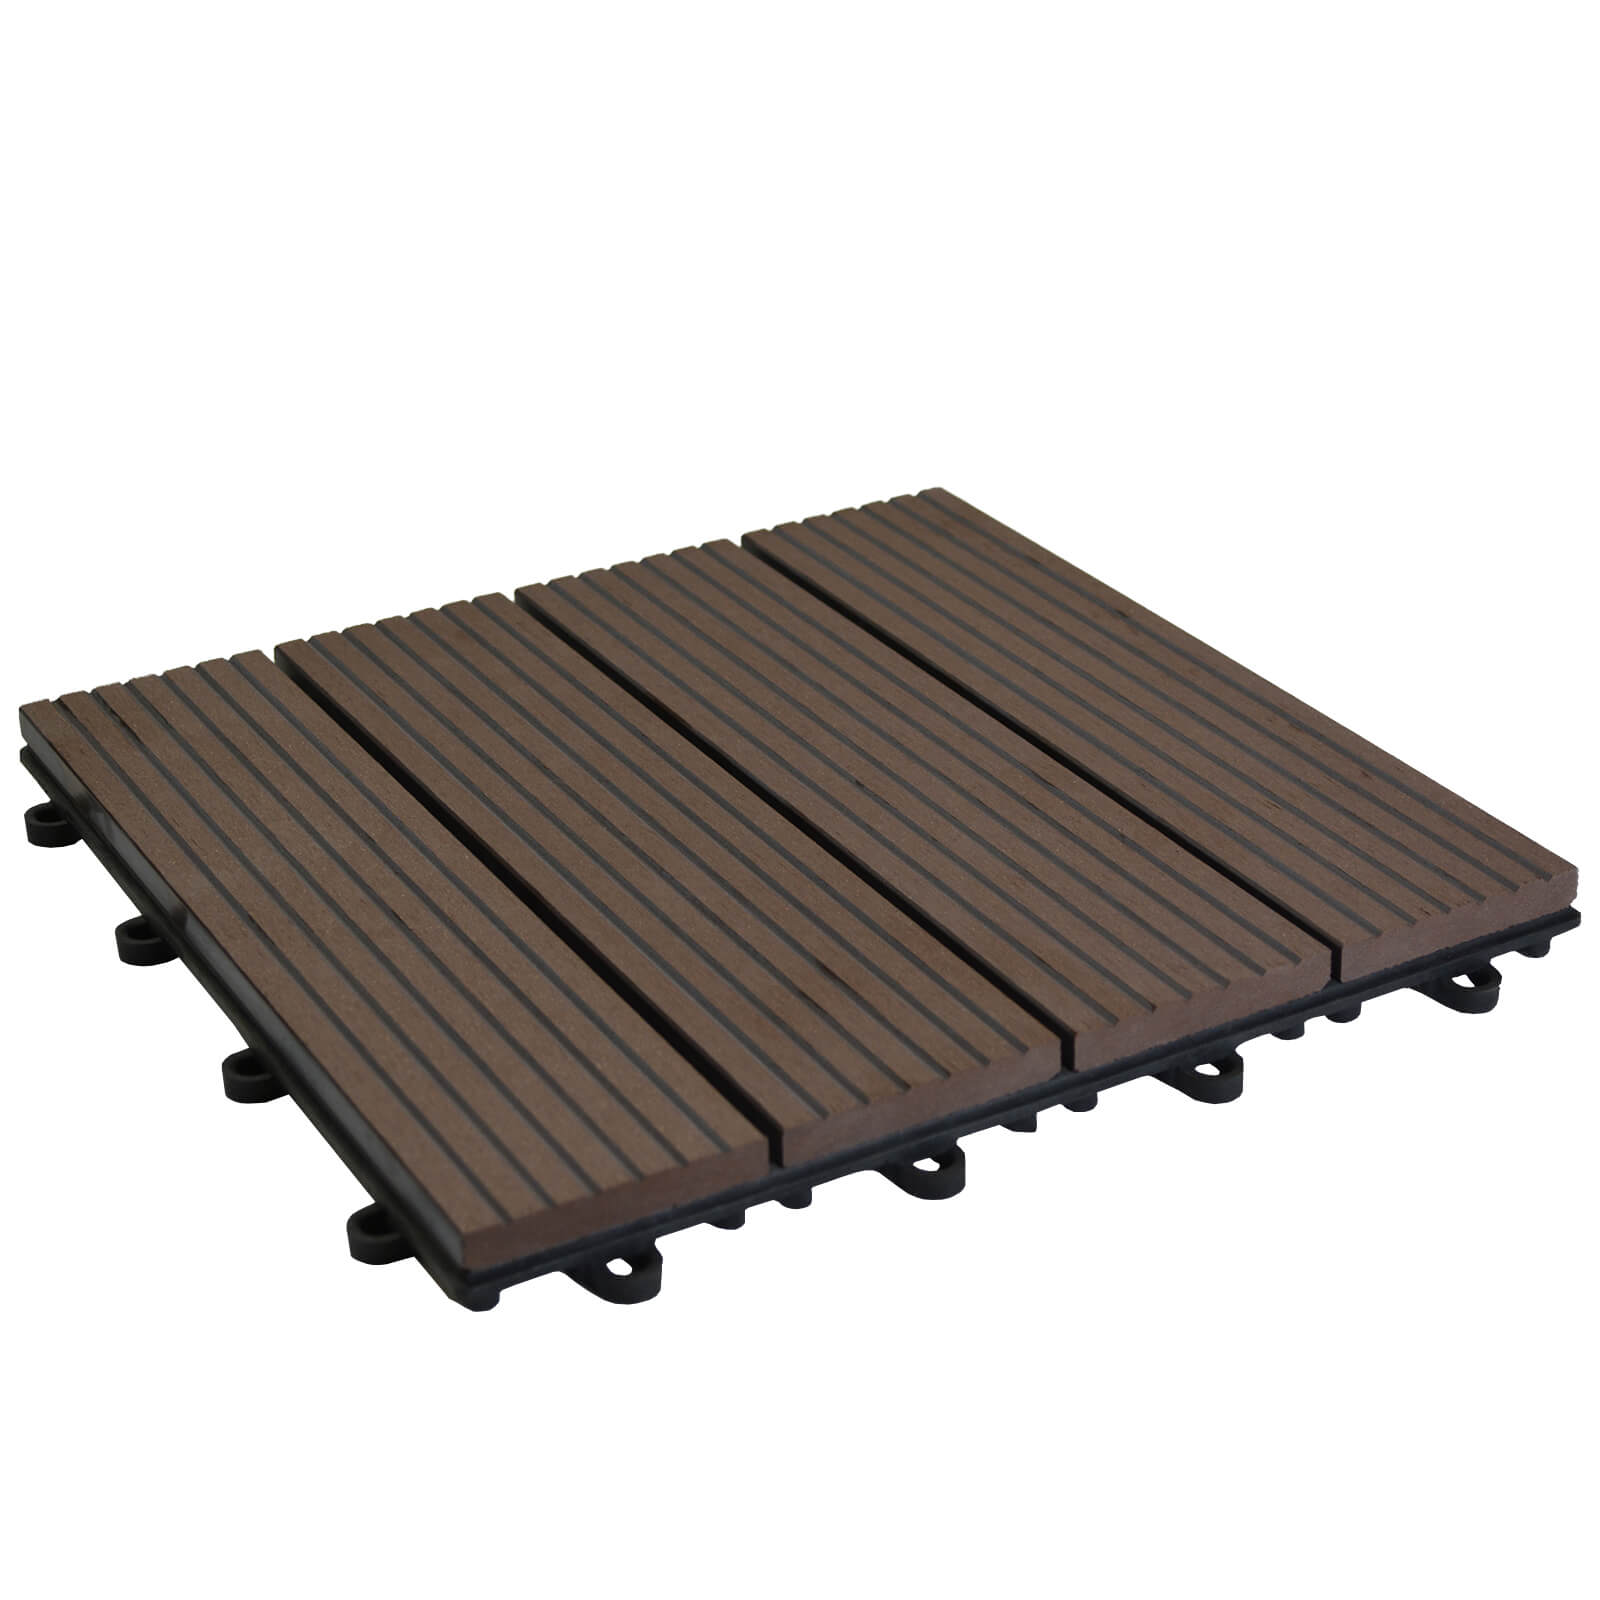 Composite Deck Tile set 30 x 30cm - Redwood - 1 sqm coverage